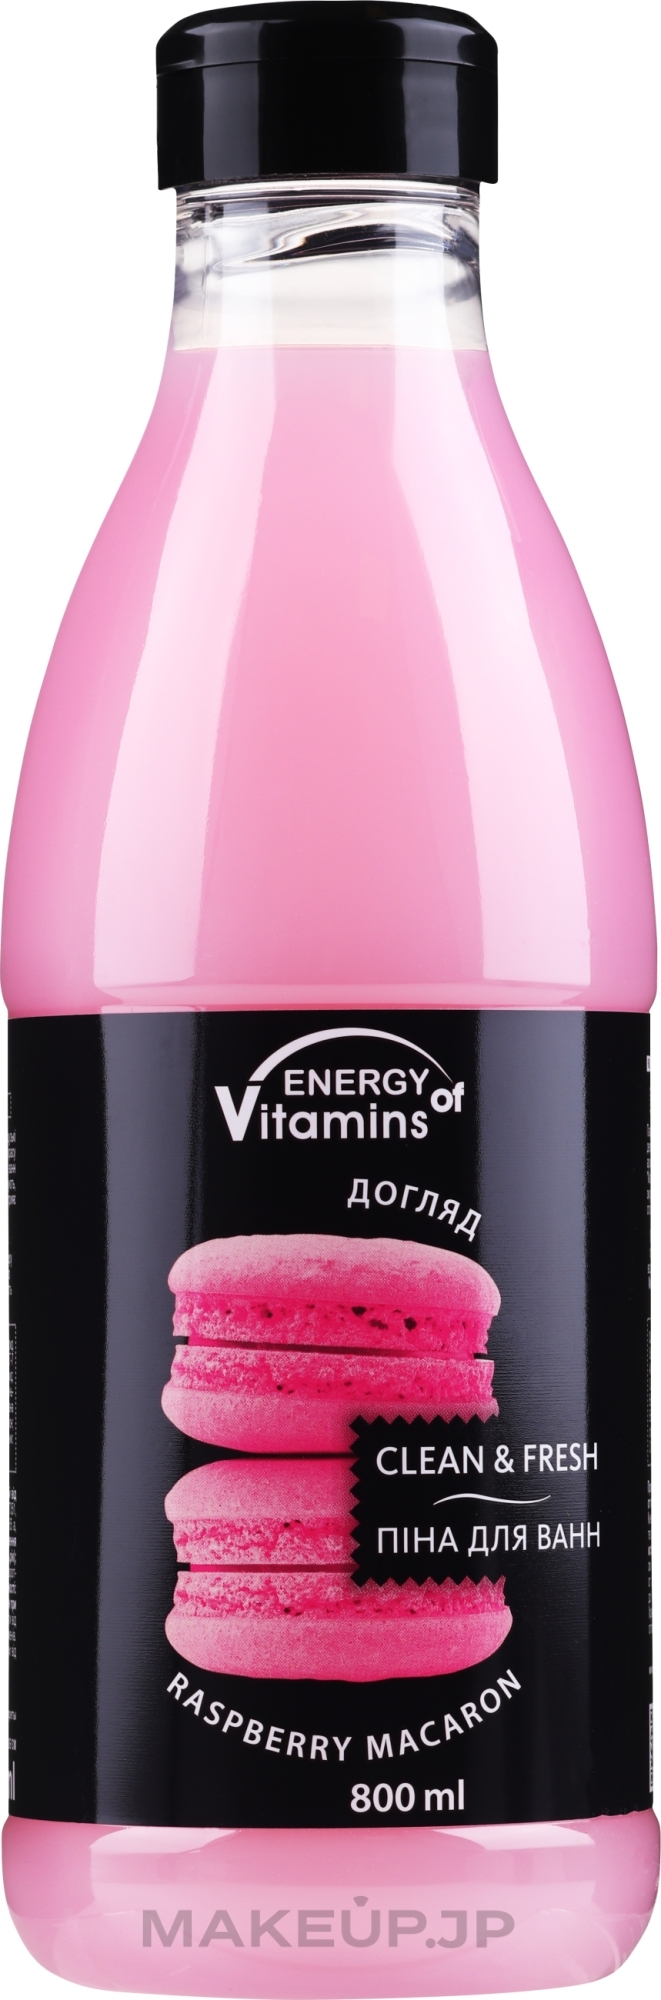 Raspberry Foam Bath Shake - Vkusnyye Sekrety Energy of Vitamins — photo 800 ml